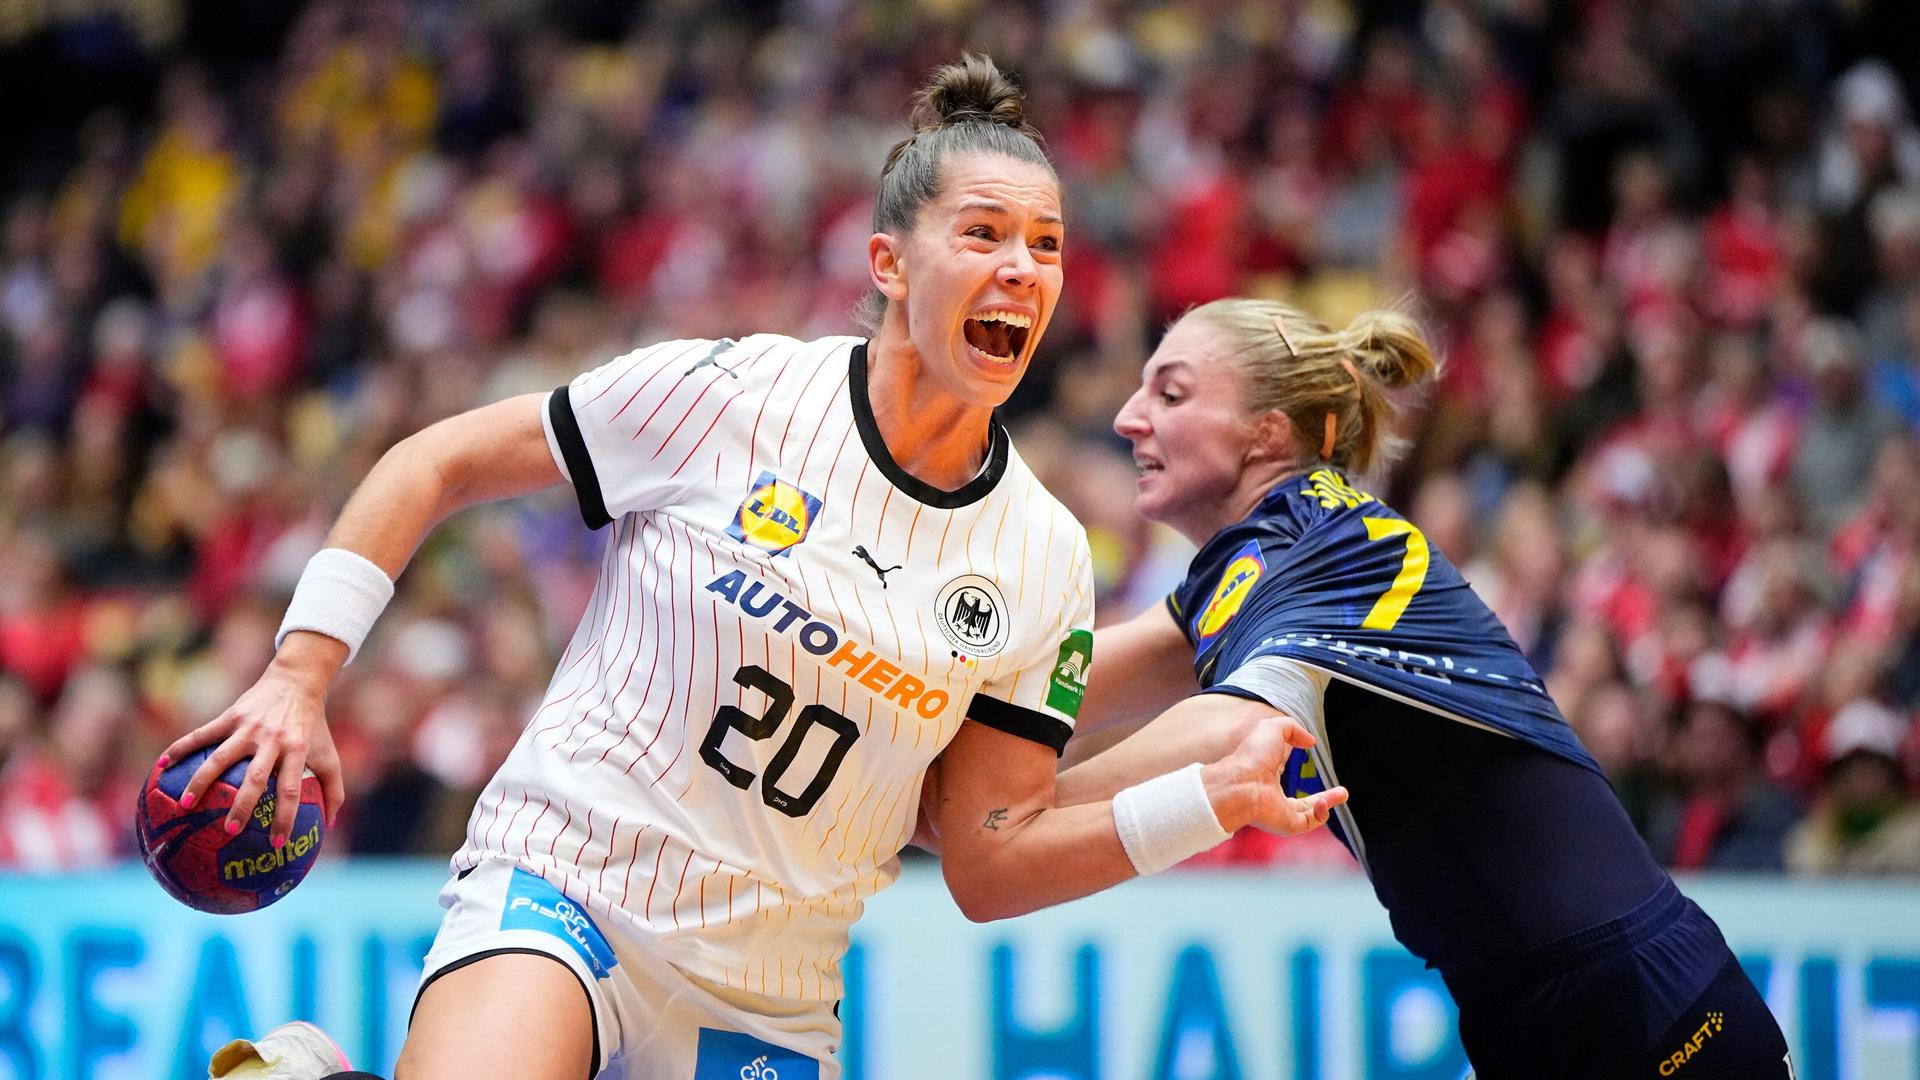 Auf dem Bild sieht man die deutsche Handballerin Emily Bölk. Sie will den Ball auf das Tor werfen. Linn Blohm aus Schweden will das verhindern.